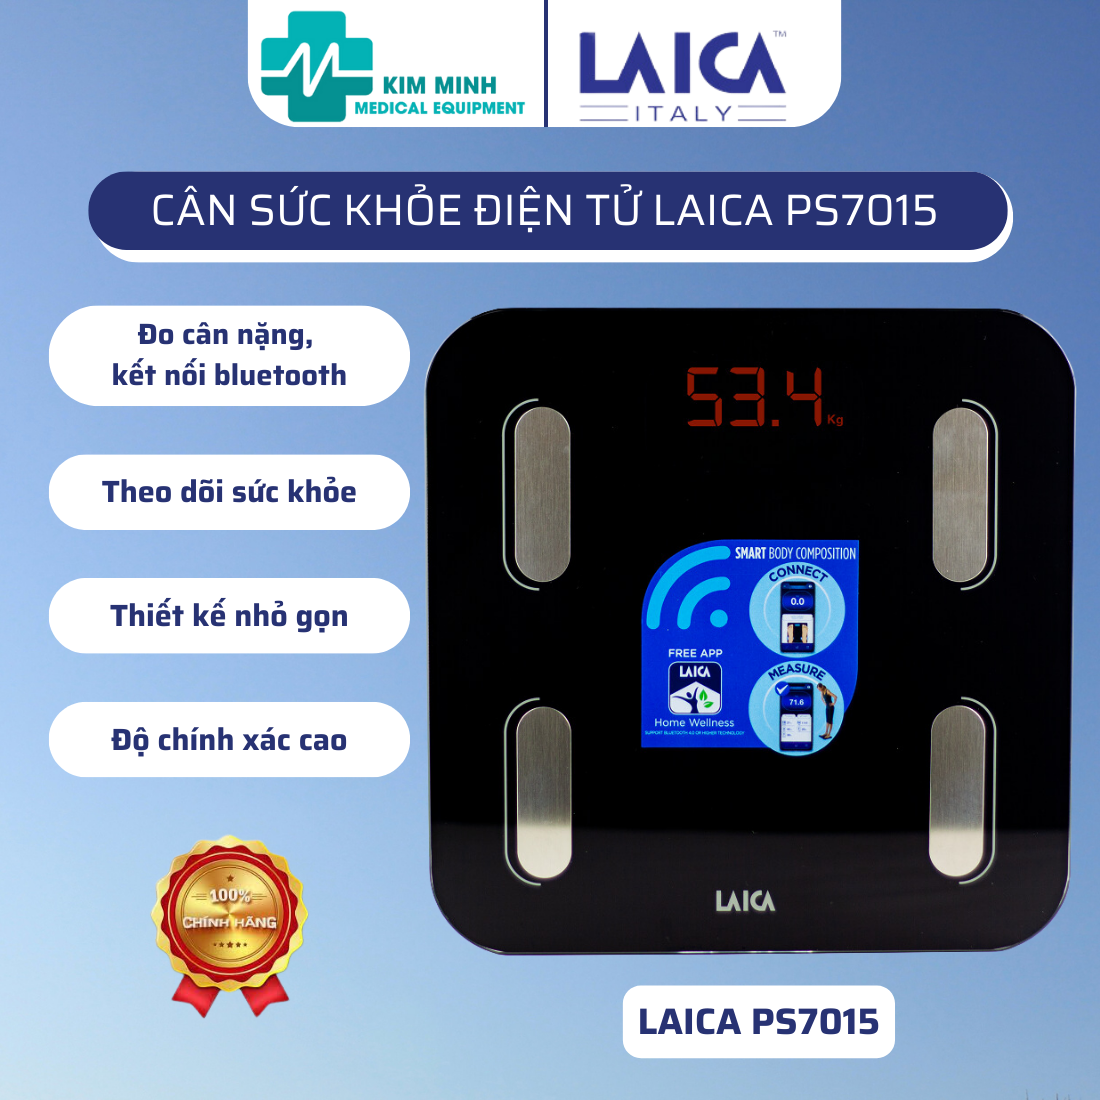 Cân sức khỏe điện tử LAICA PS7015, cân điện tử thông minh kết nối bluetooth